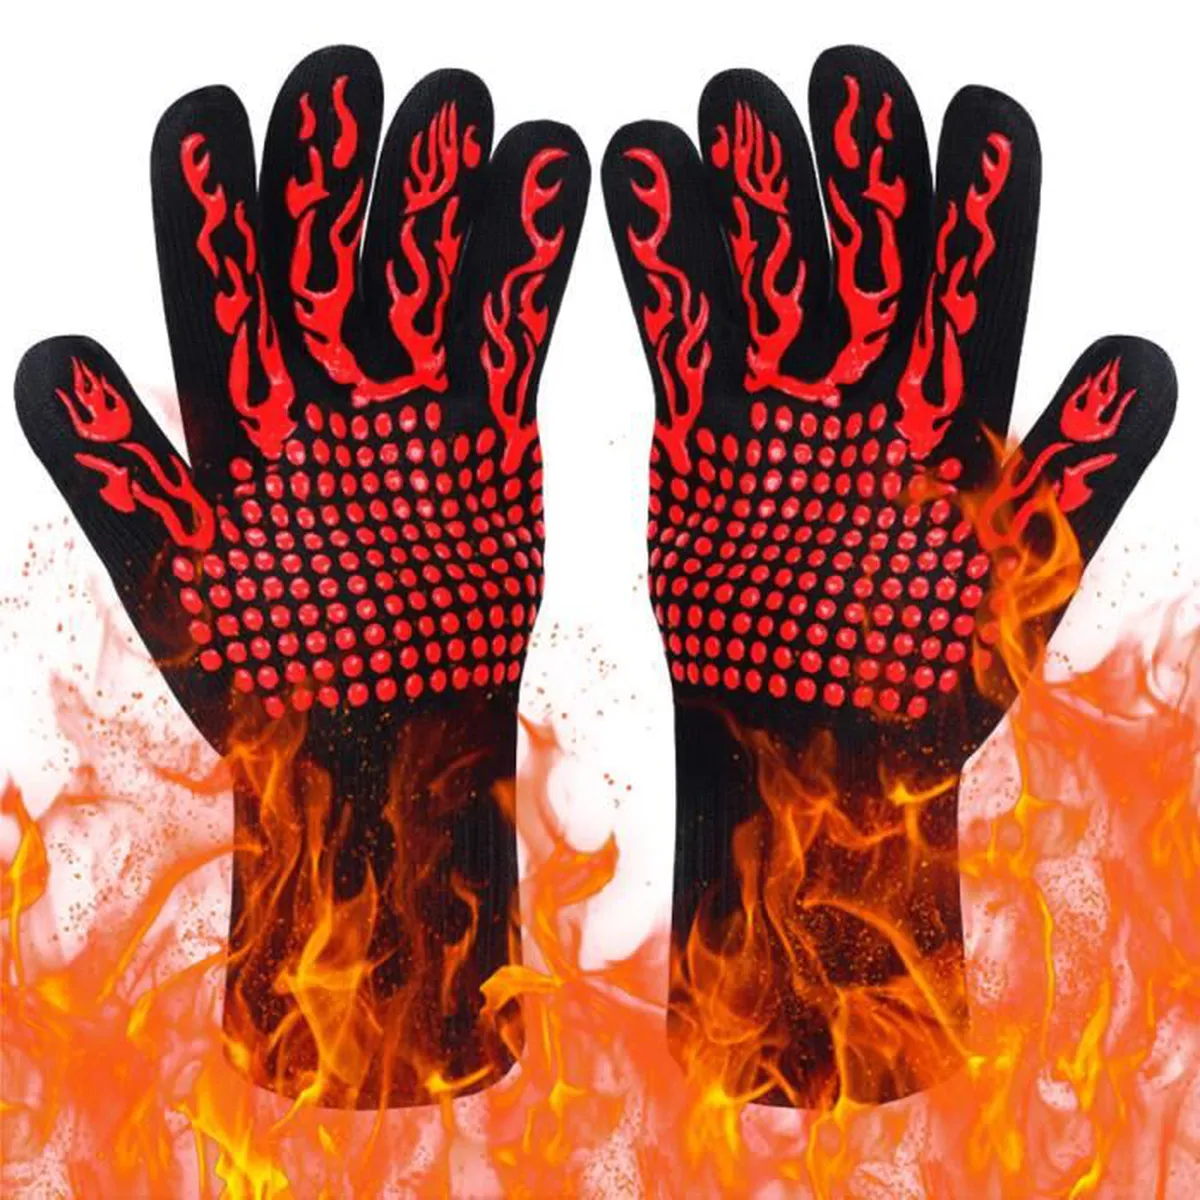 Gant anti-chaleur avec flammes pour barbecue